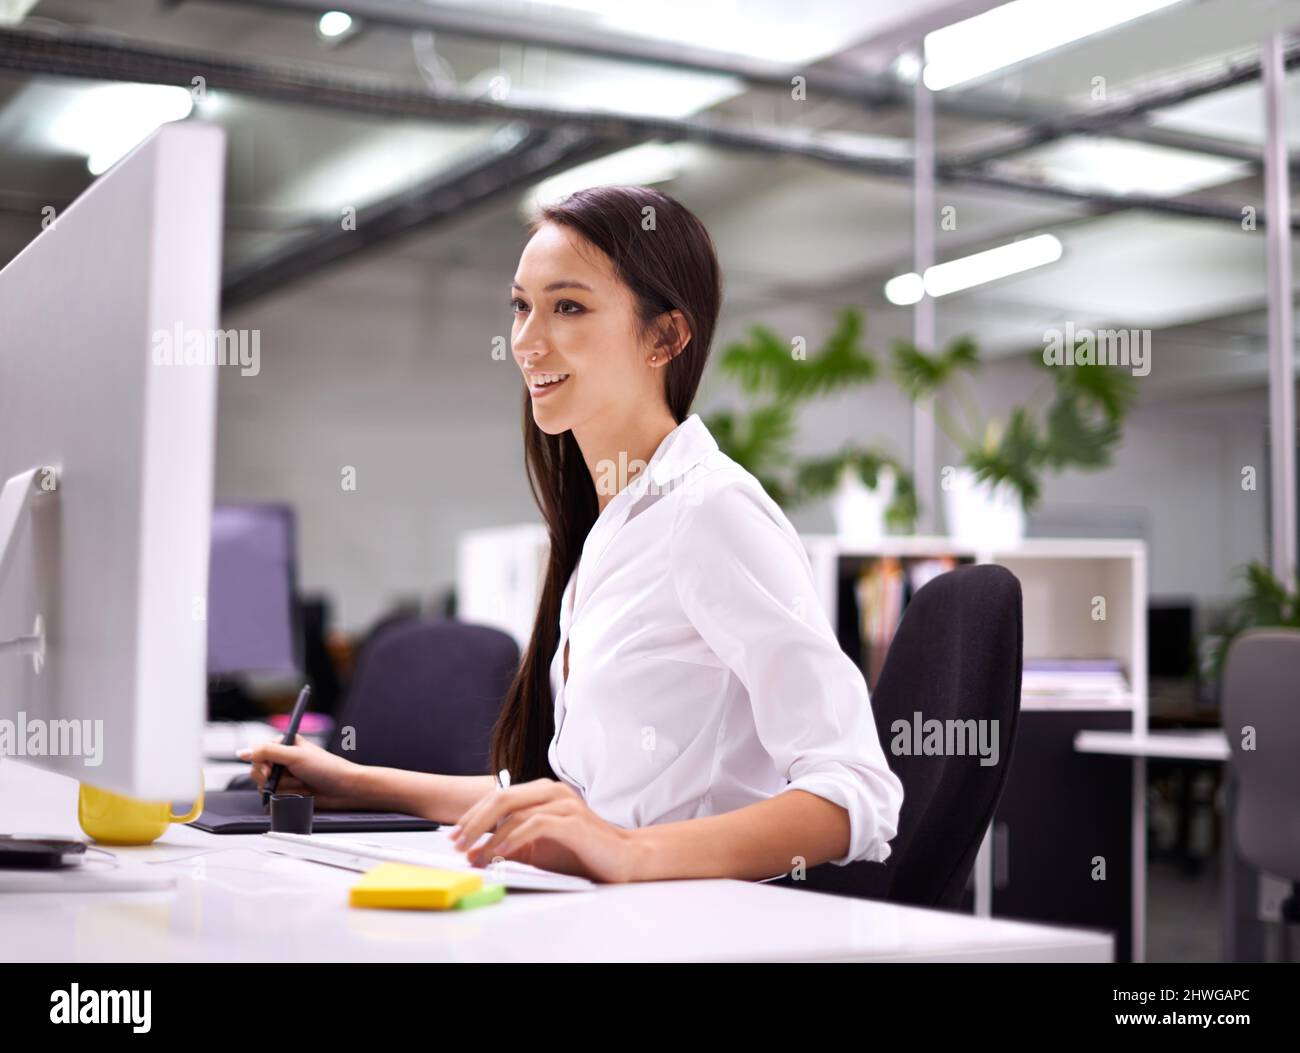 Genießen Sie jede Minute Arbeit. Eine kurze Aufnahme einer attraktiven jungen Frau, die an ihrem Schreibtisch arbeitet. Stockfoto